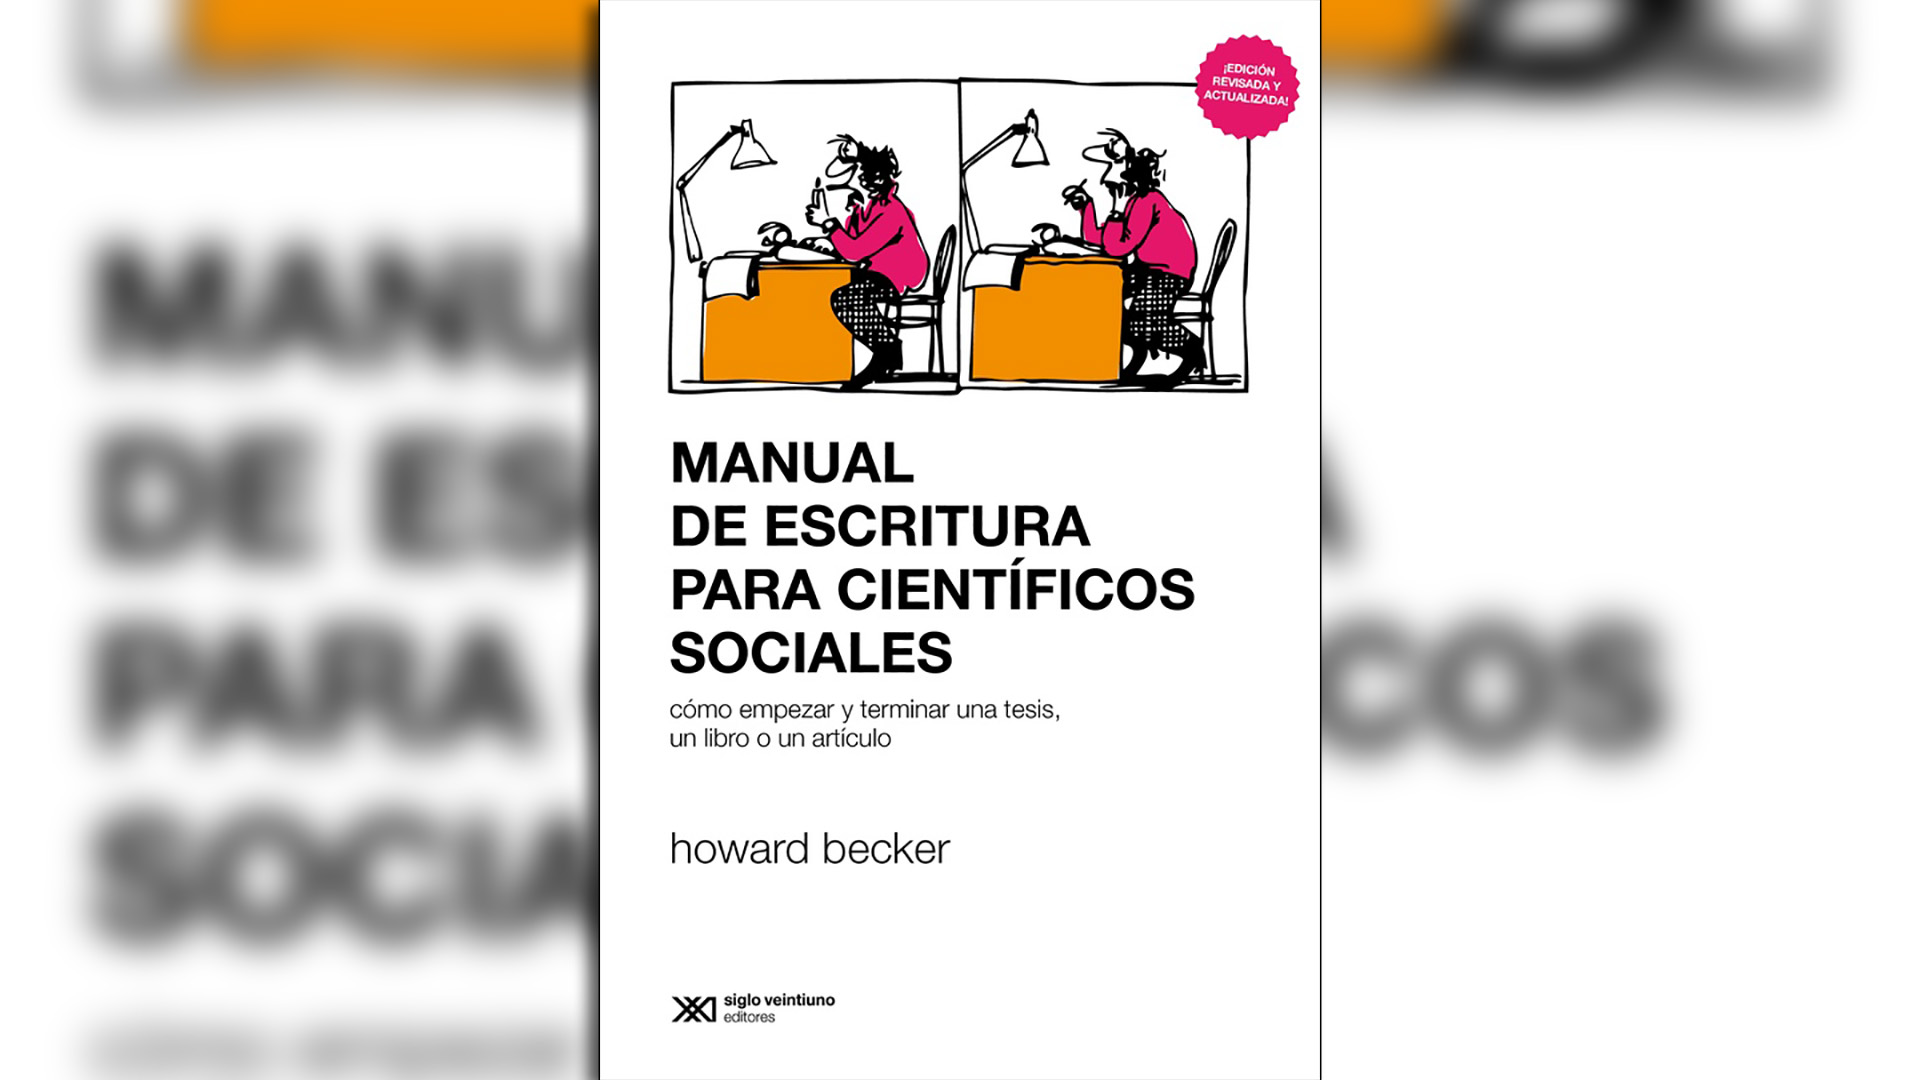 Manual de escritura para científicos sociales: Cómo empezar y terminar una tesis, un libro o un artículo, de Howard Becker